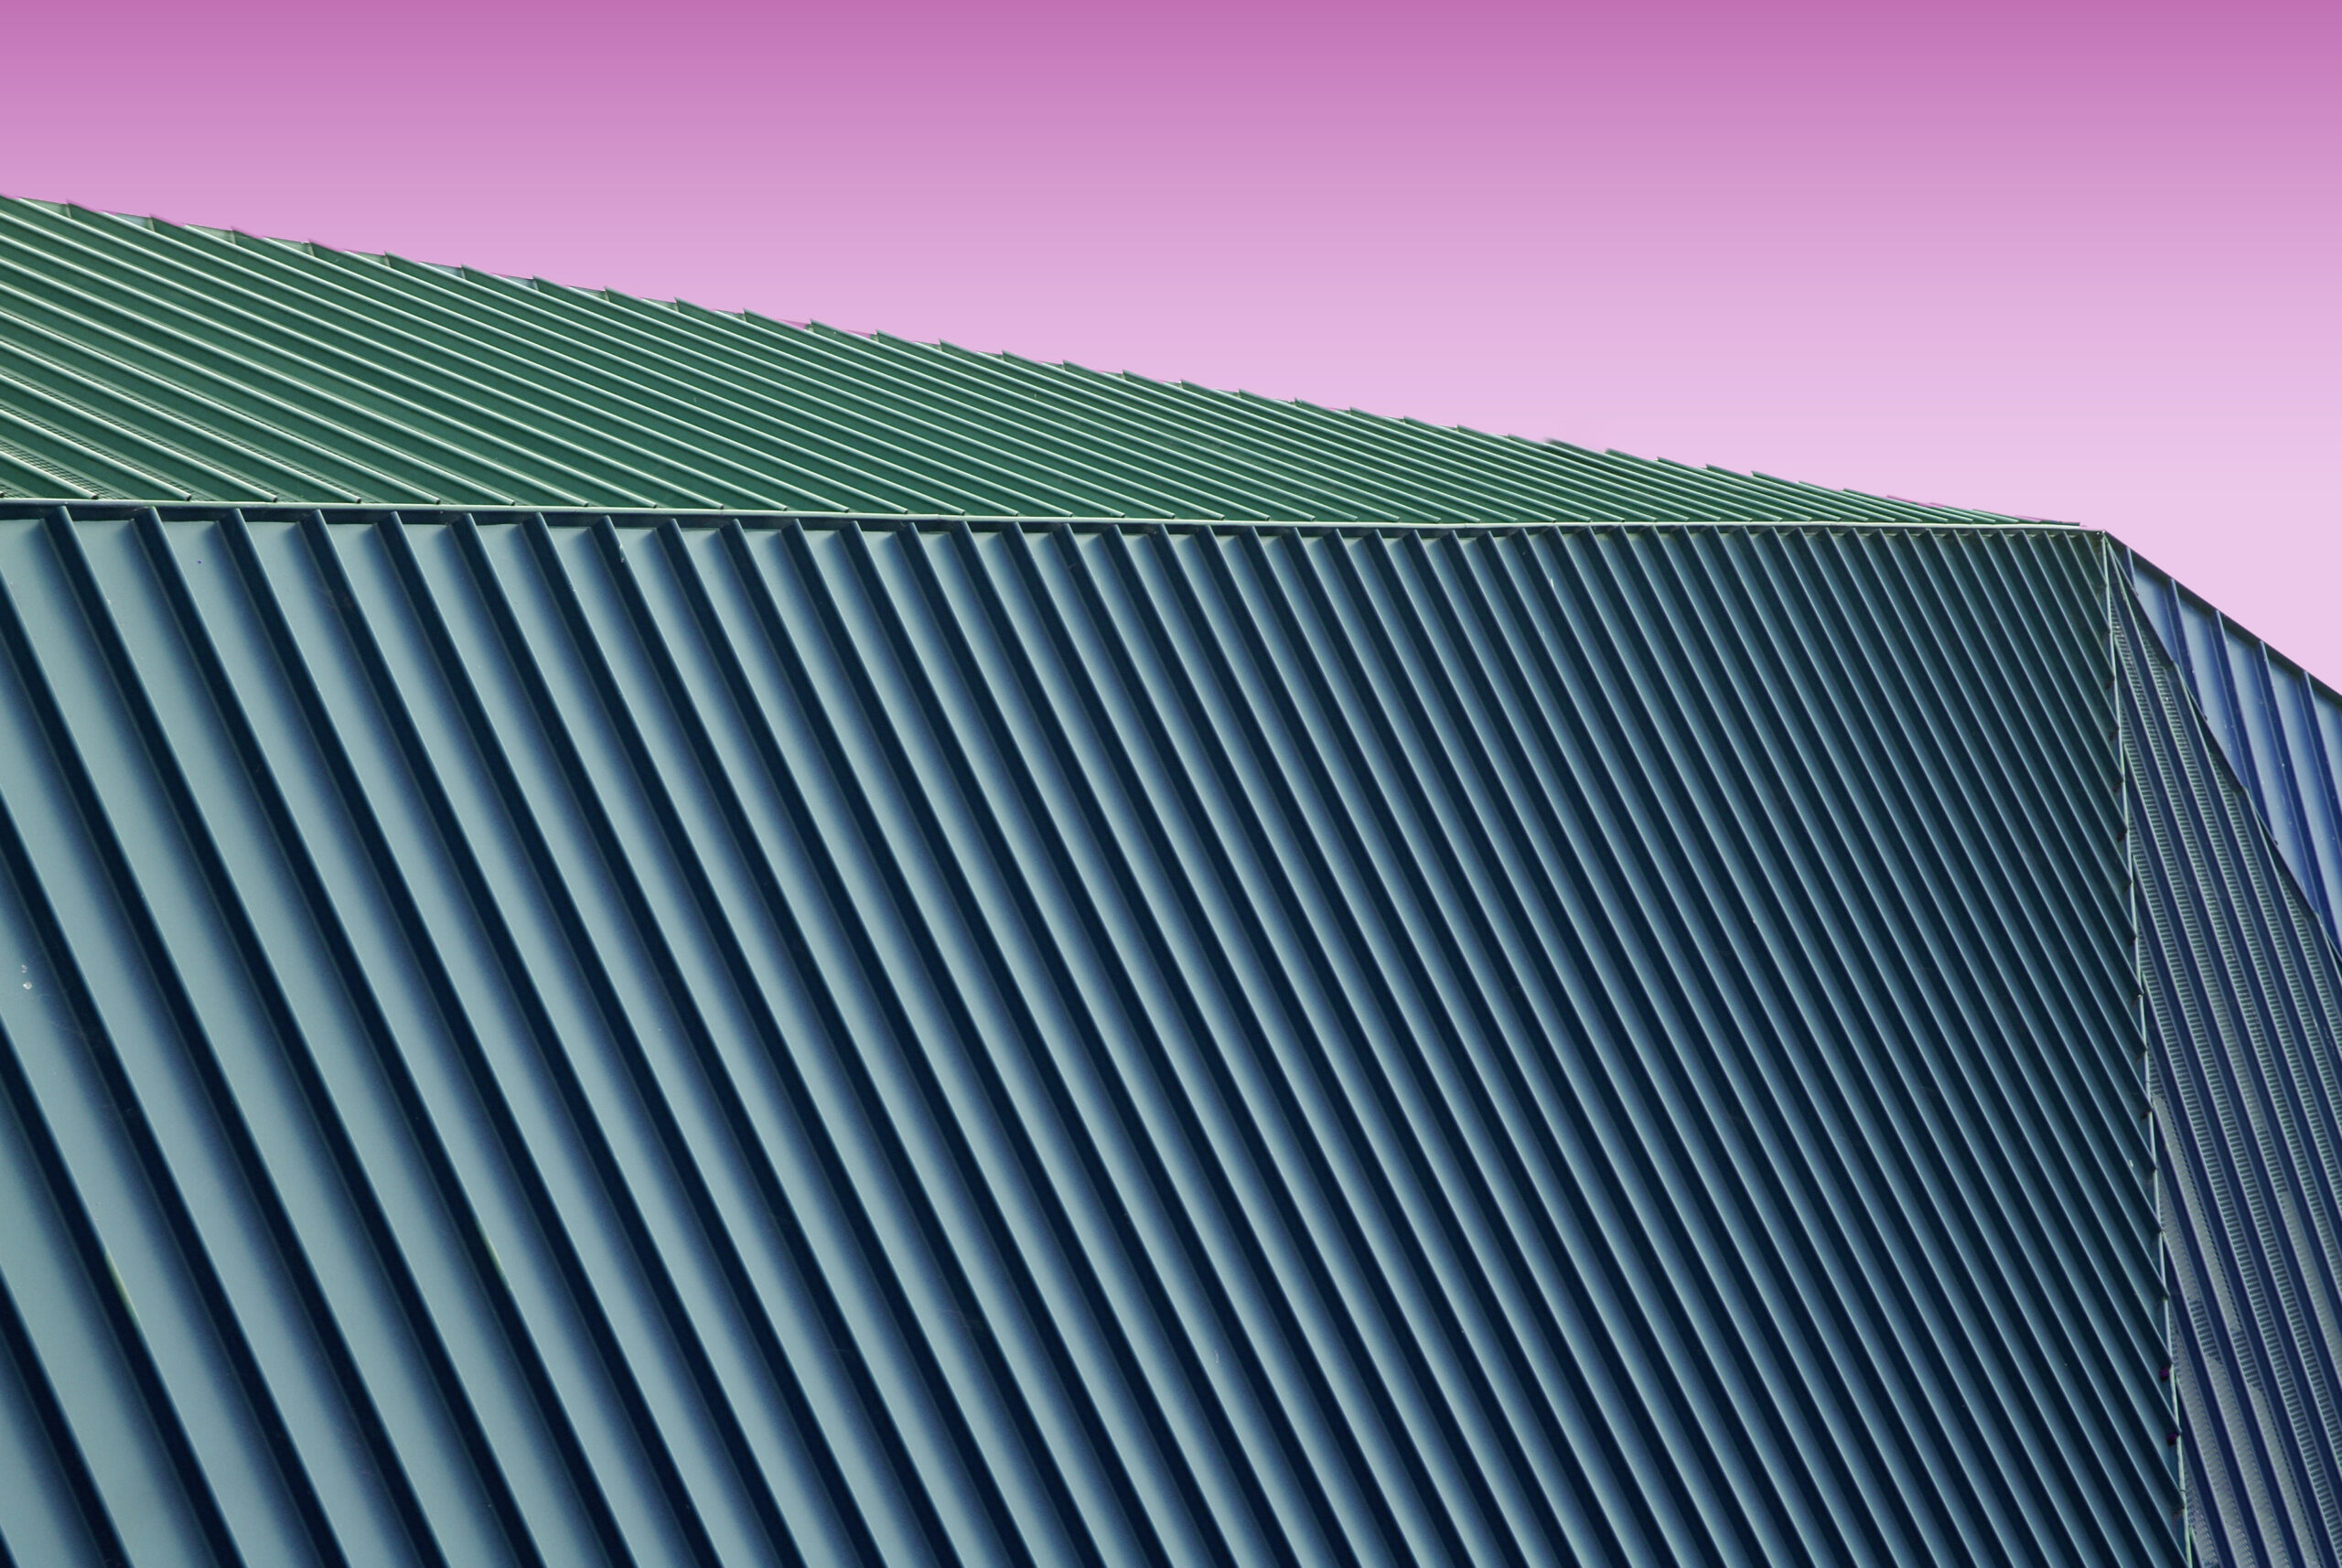 Industrial metal roof and Metal side